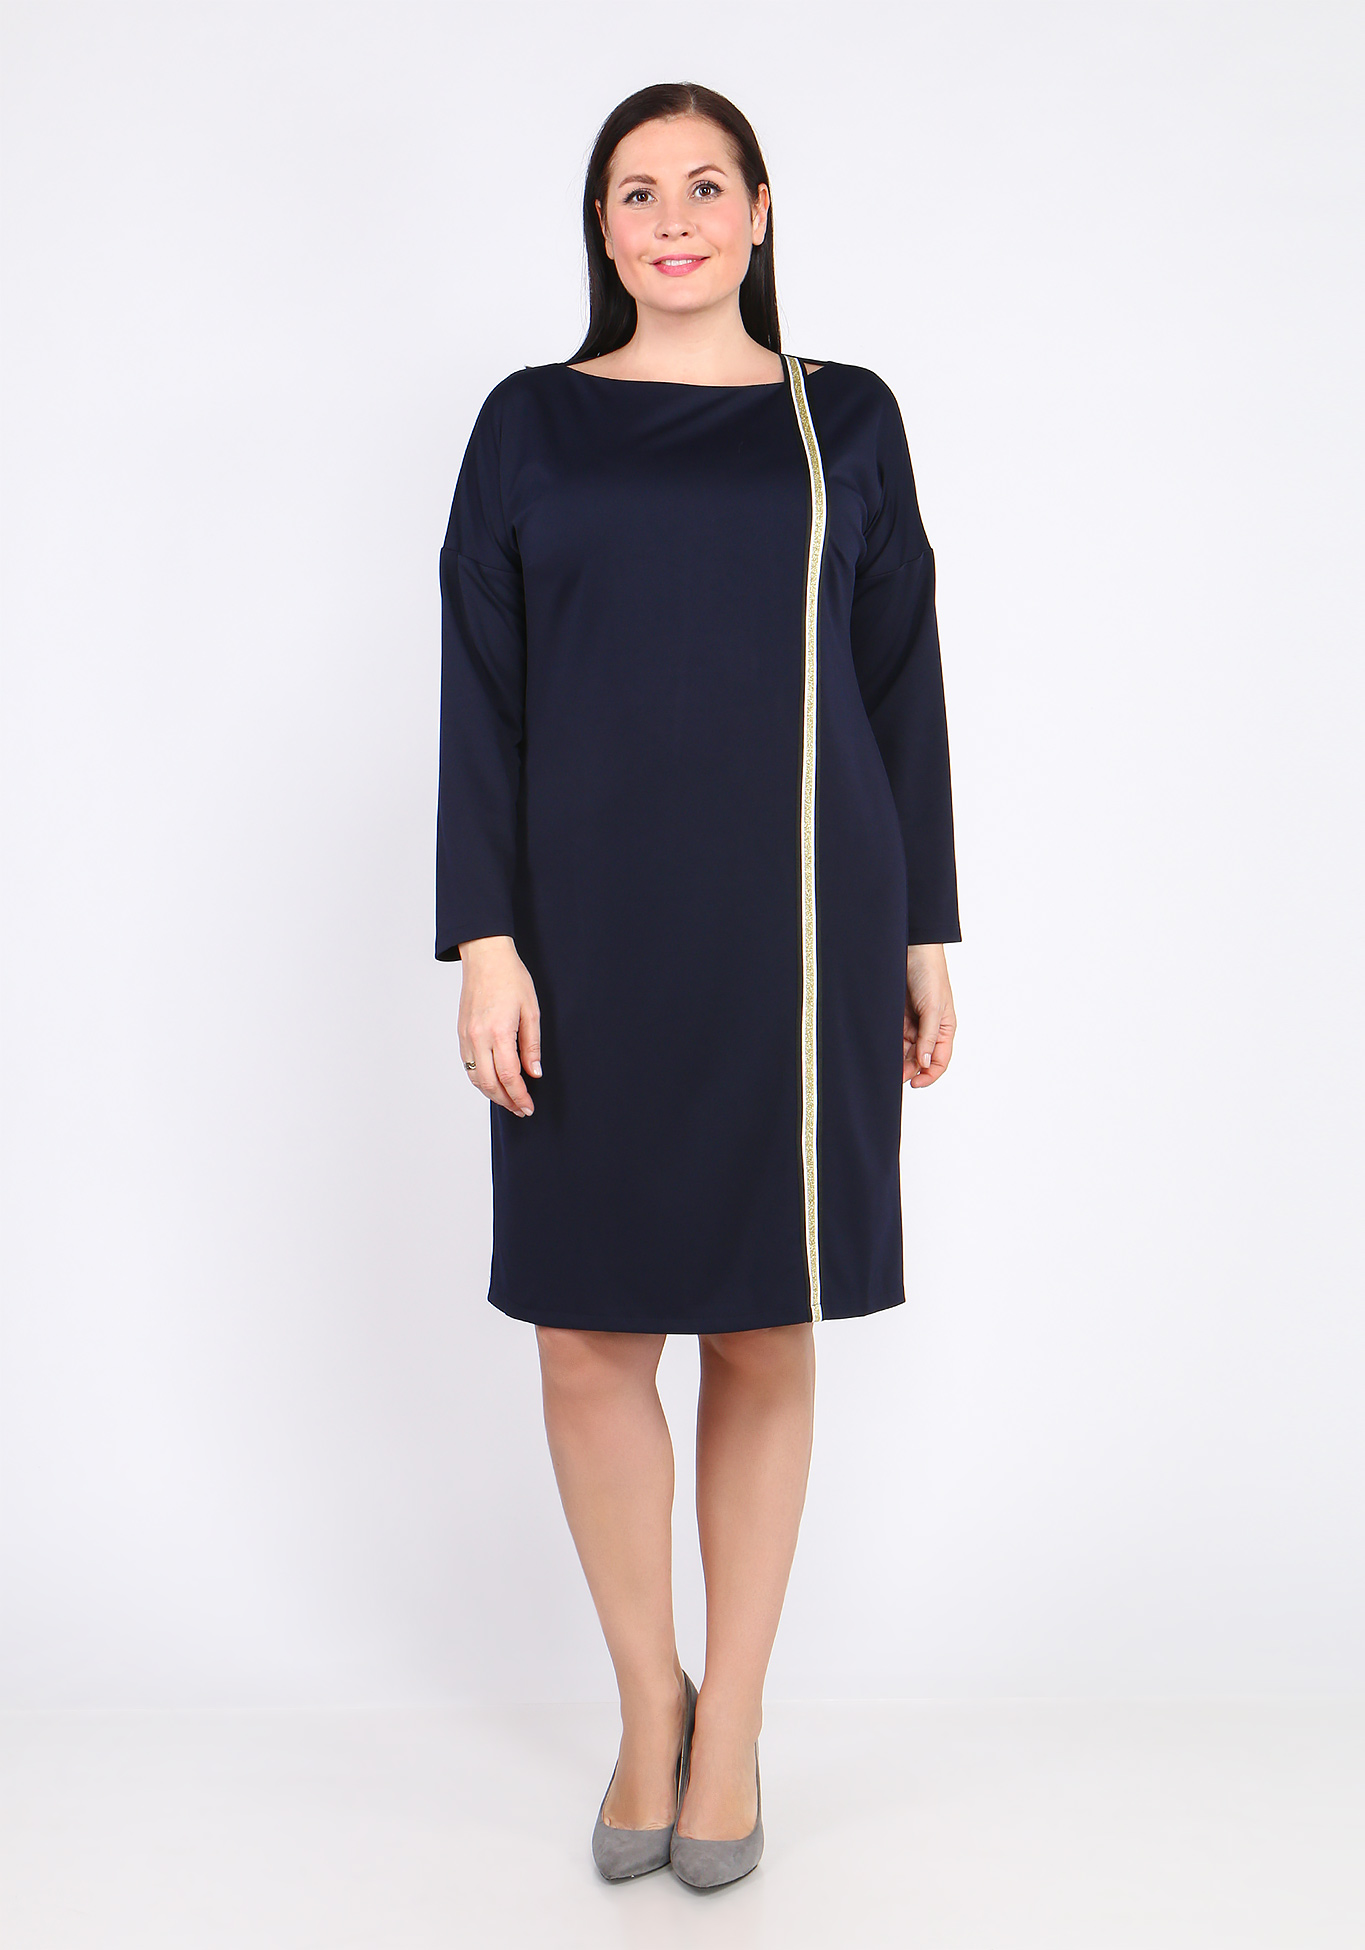 Платье с лампасом Bianka Modeno, размер 48, цвет чёрный - фото 6